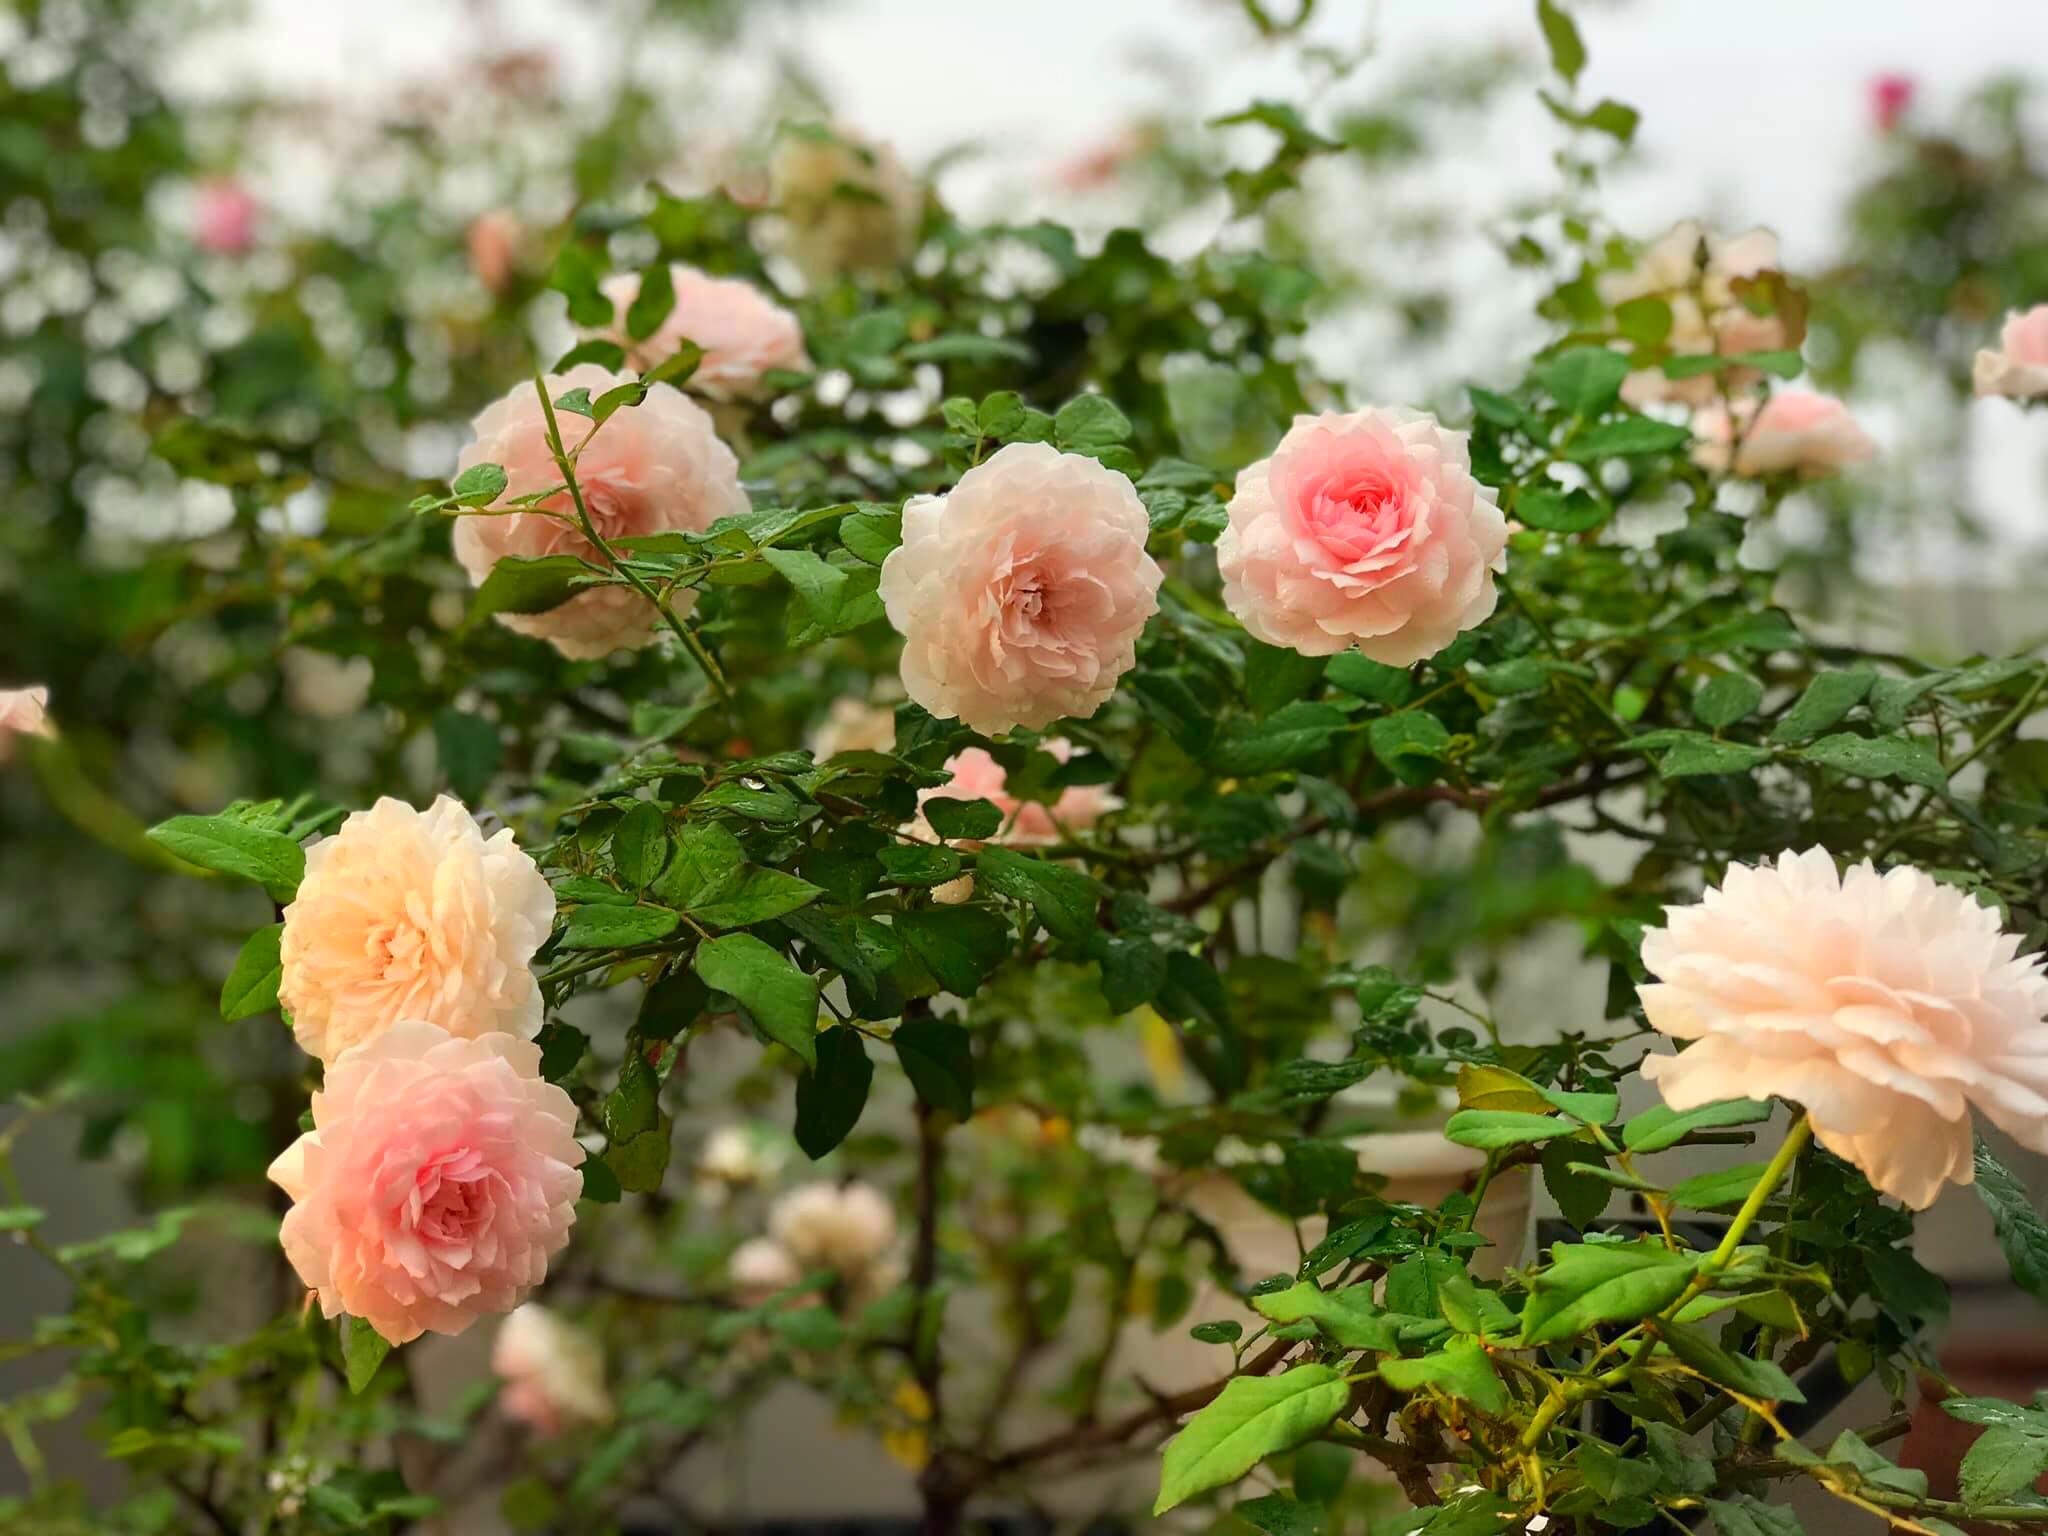 Ngày 20/11 ghé thăm vườn hồng ngát hương dịu dàng khoe sắc trên sân thượng của cô giáo dạy Văn ở Nha Trang - Ảnh 13.